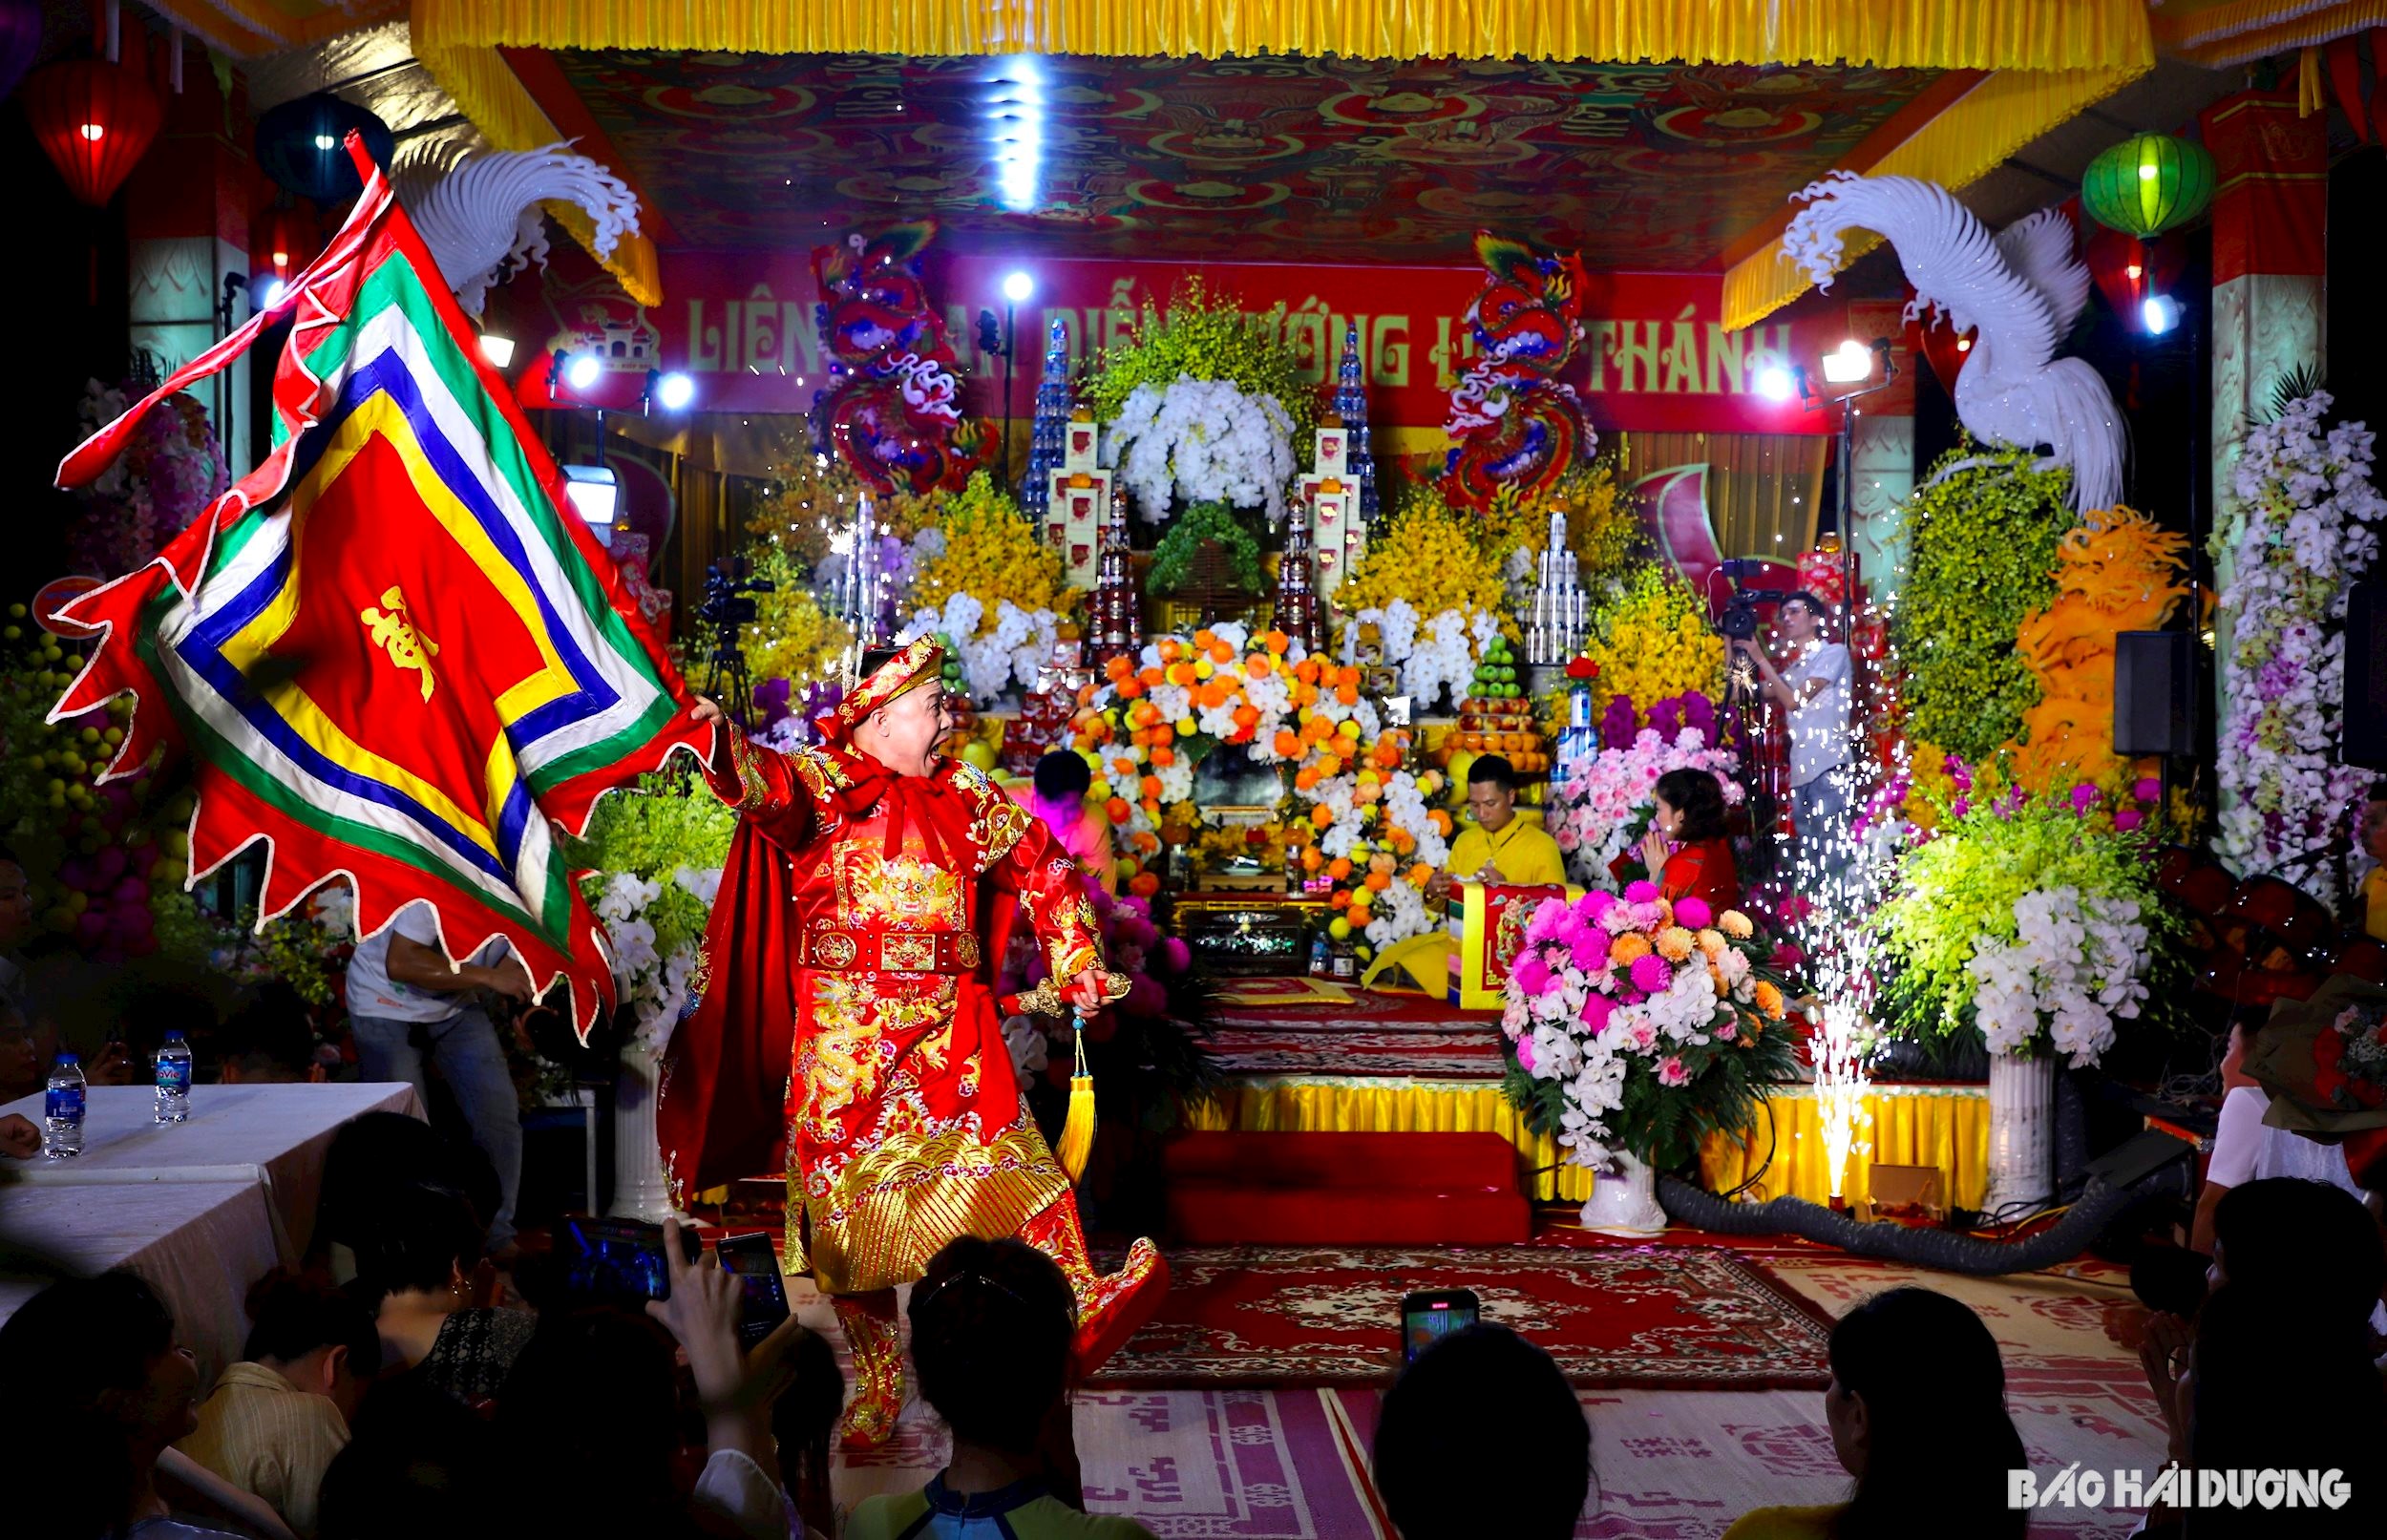 Liên hoan diễn xướng hầu Thánh tại Lễ hội mùa thu Côn Sơn - Kiếp Bạc năm 2023 mang đậm chất văn hoá dân gian, góp phần thu hút du khách về với lễ hội